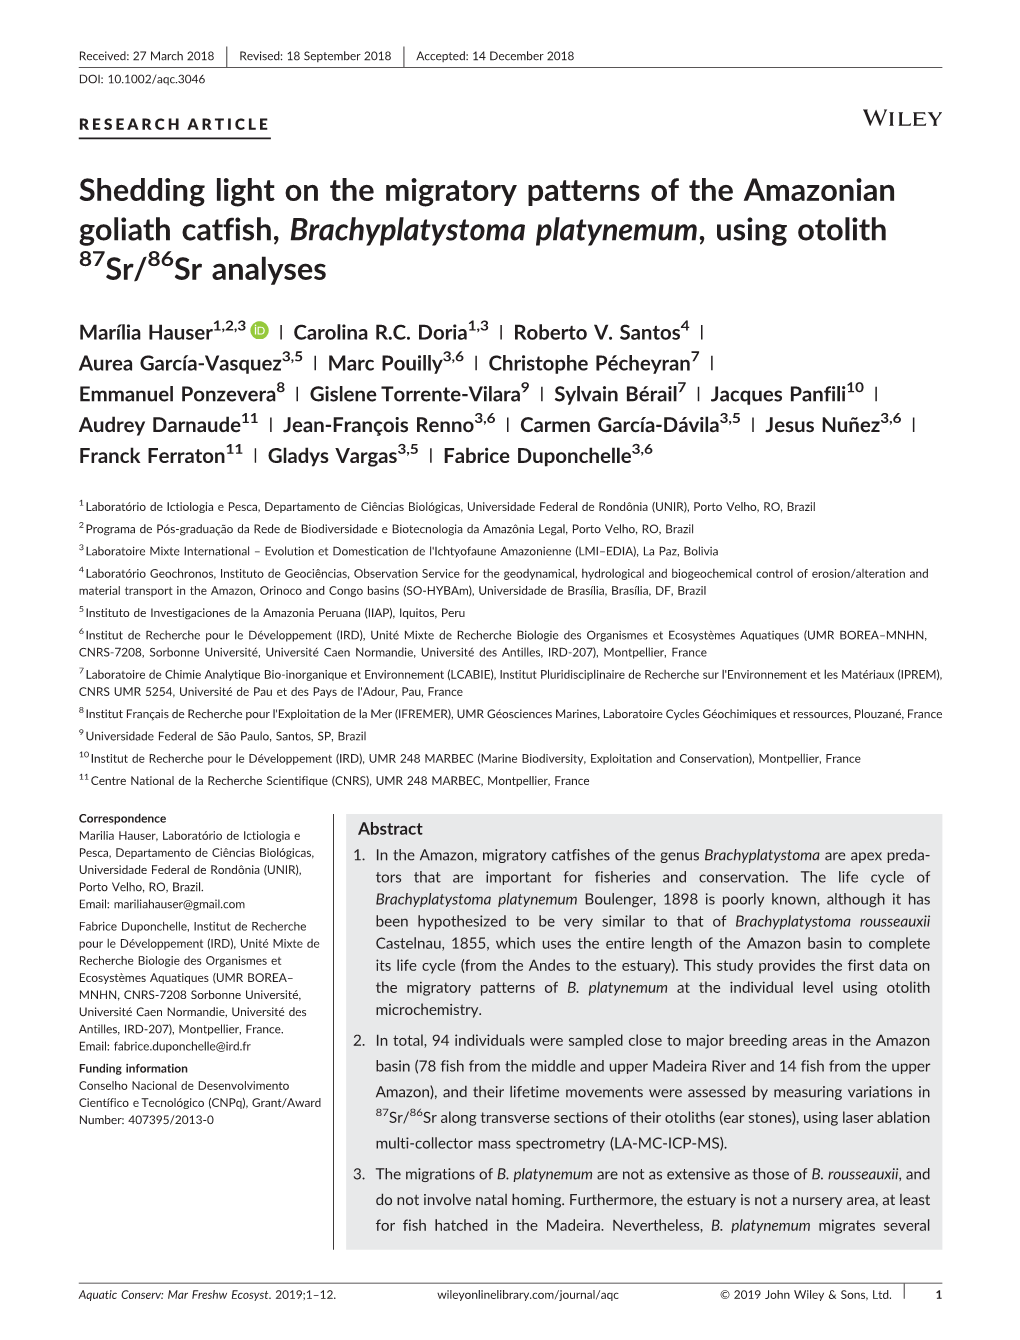 Shedding Light on the Migratory Patterns of the Amazonian Goliath Catfish, Brachyplatystoma Platynemum, Using Otolith 87Sr/86Sr Analyses